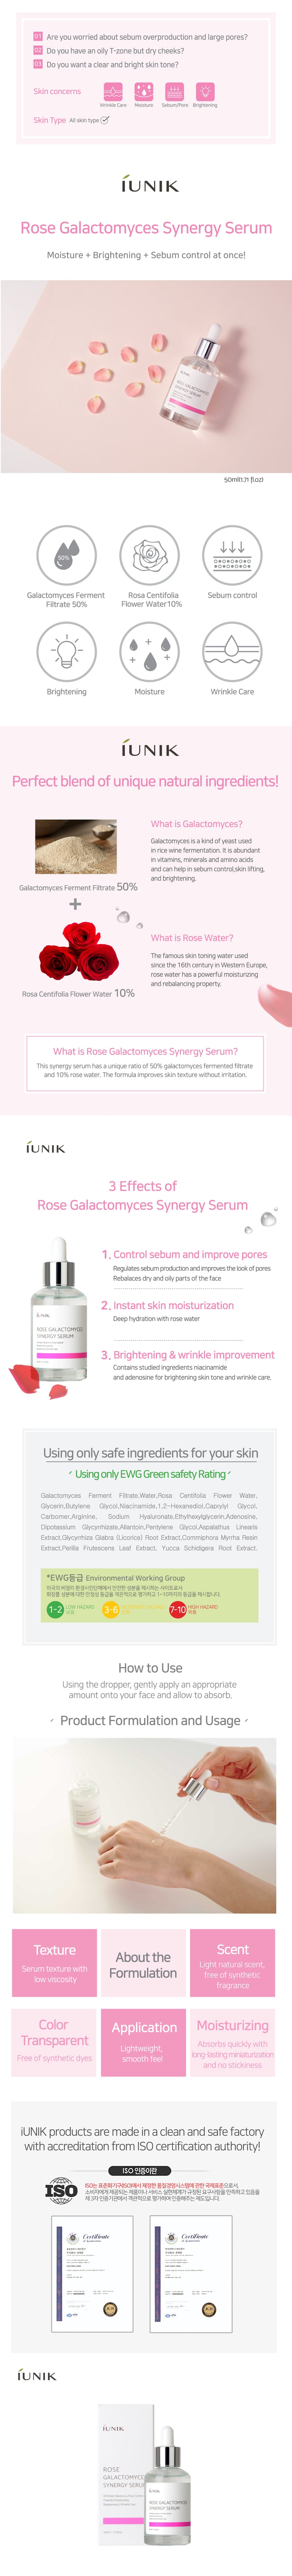 iUNIK Rose Galactomyces Synergy Serum